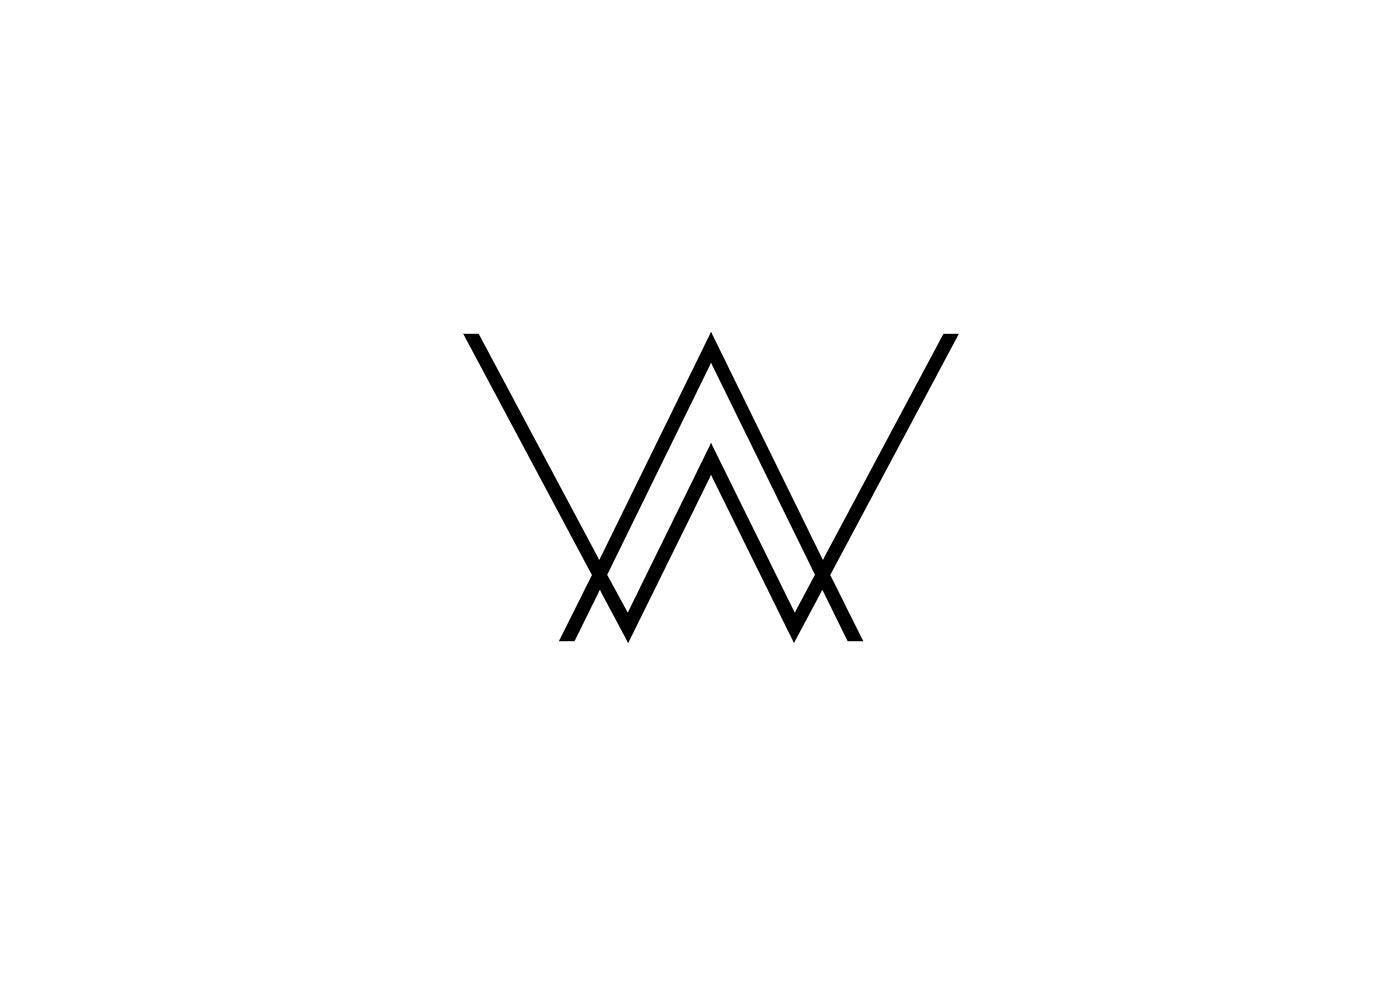 AW minimalist logo icon